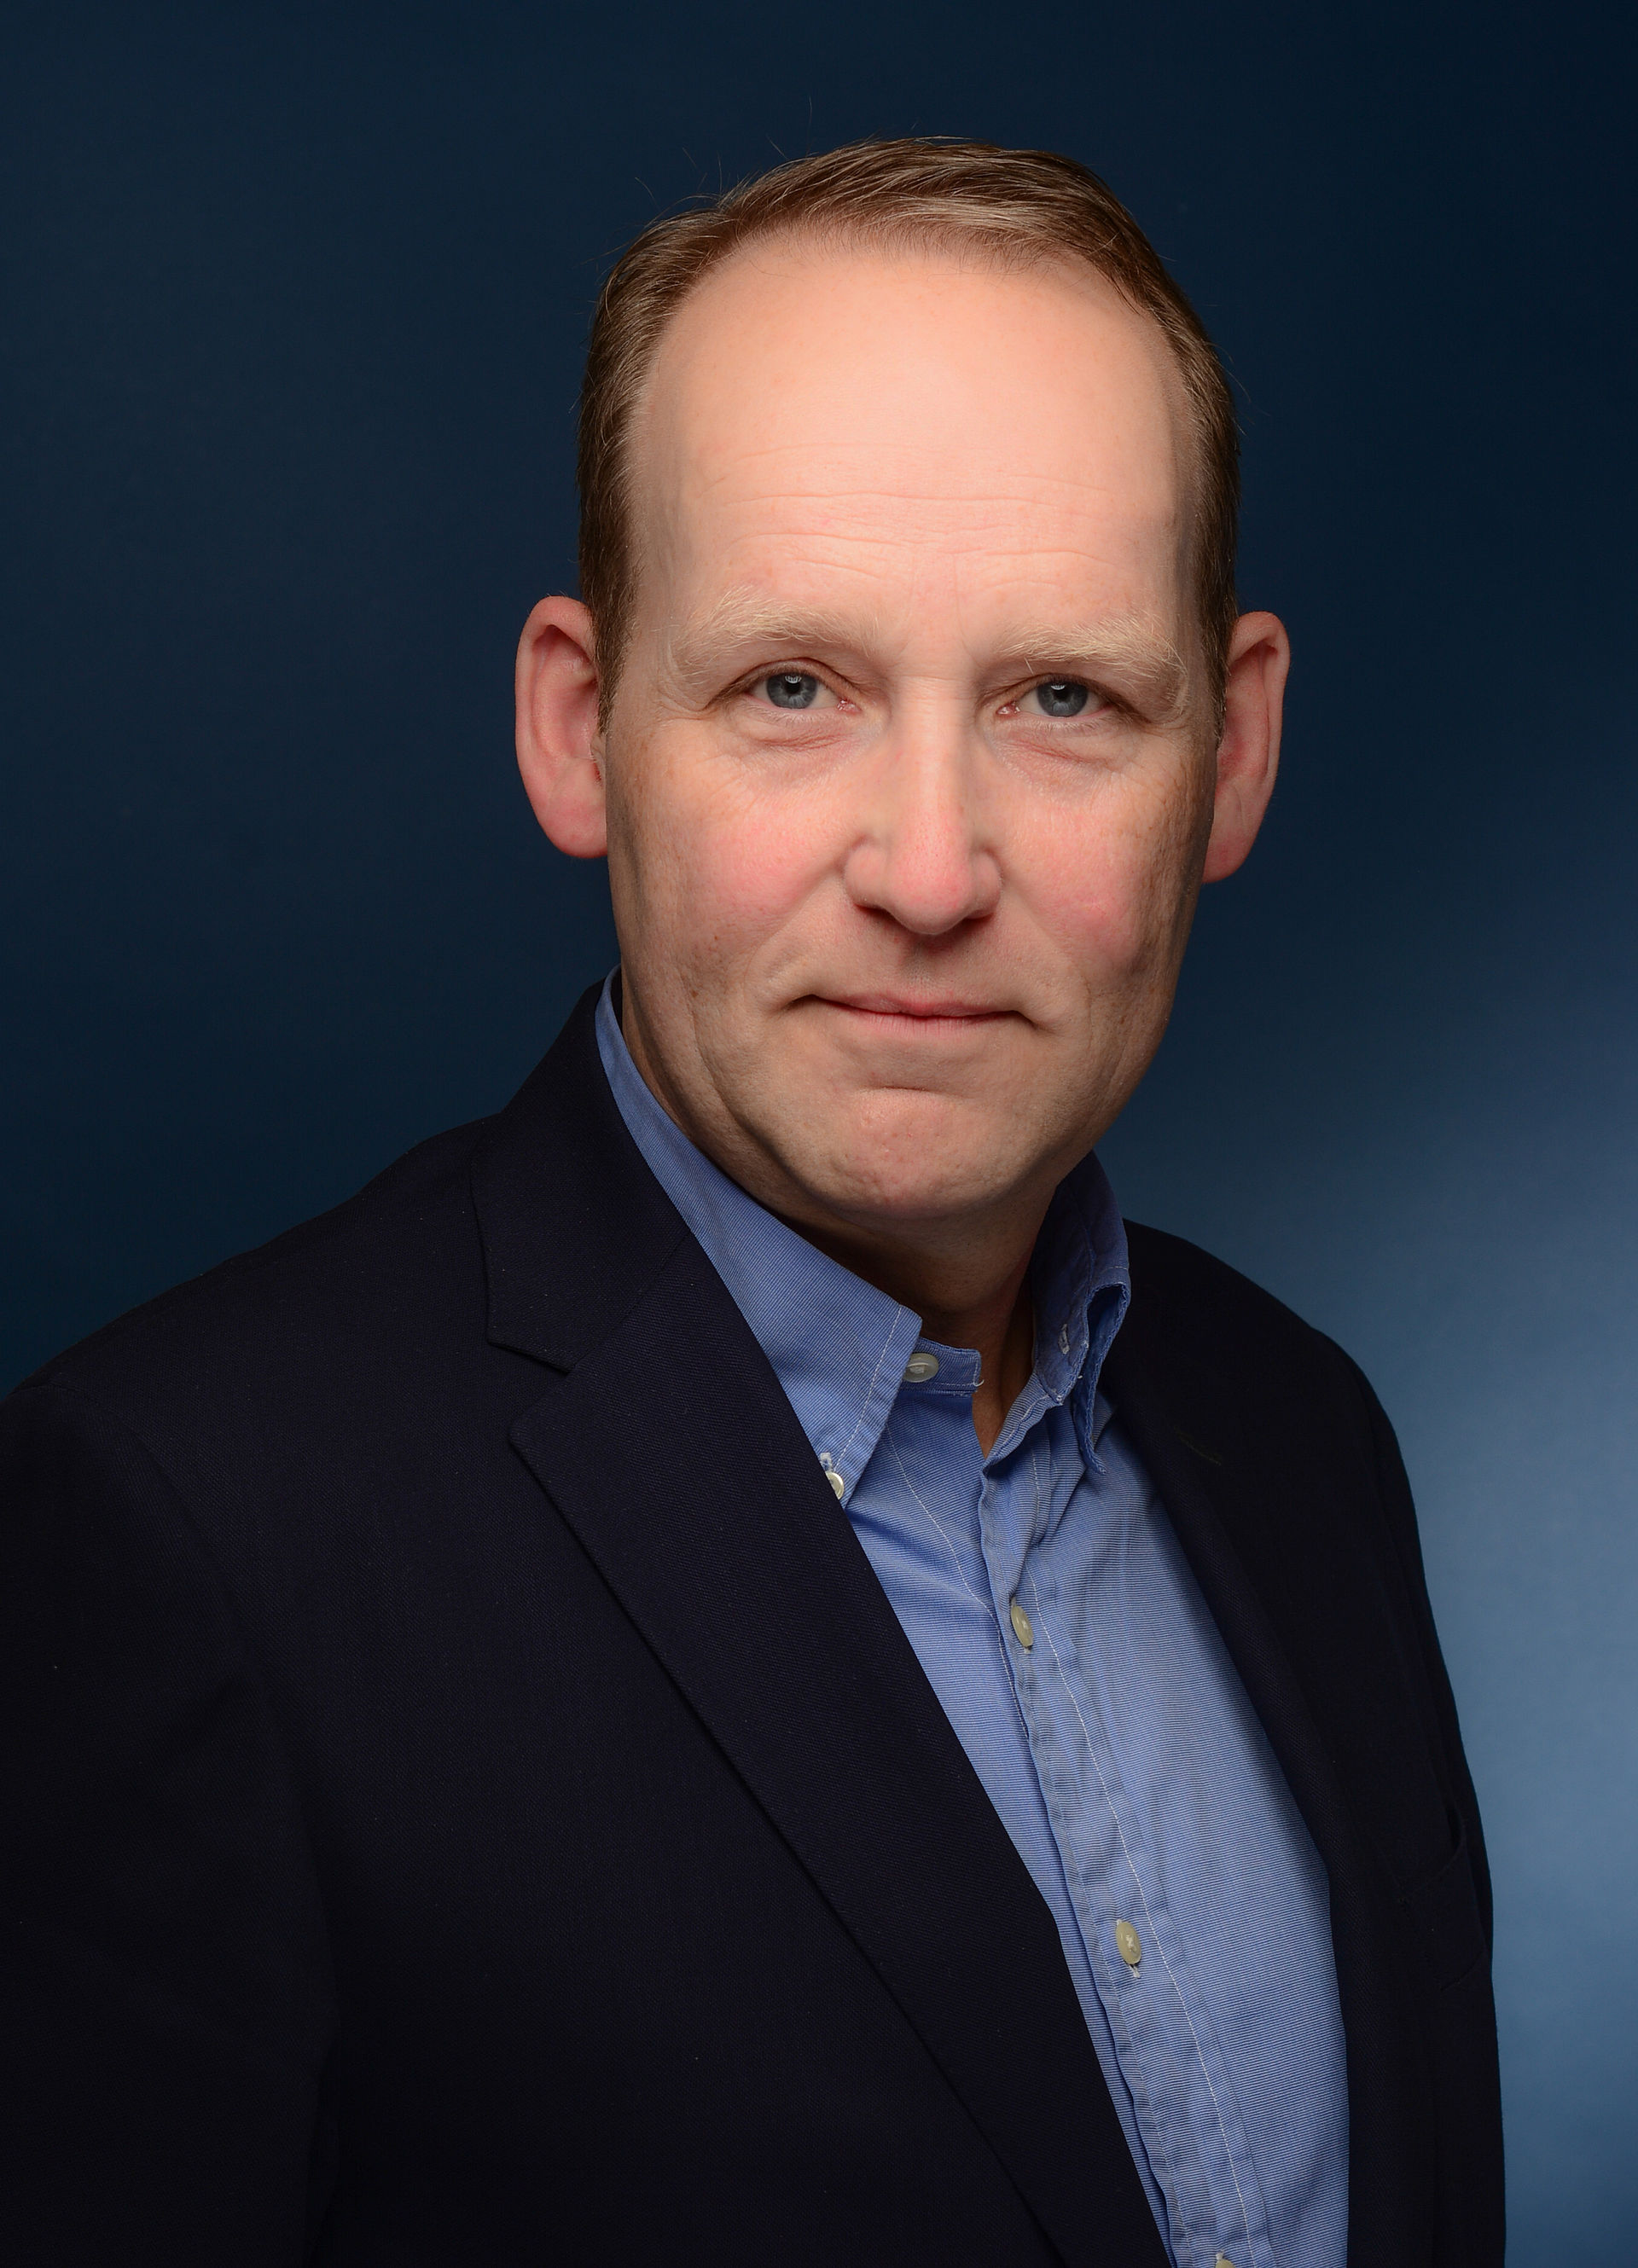 Portraitfoto von Ulrich Balke in einem schwarzen Sakko und blauen Hemd.